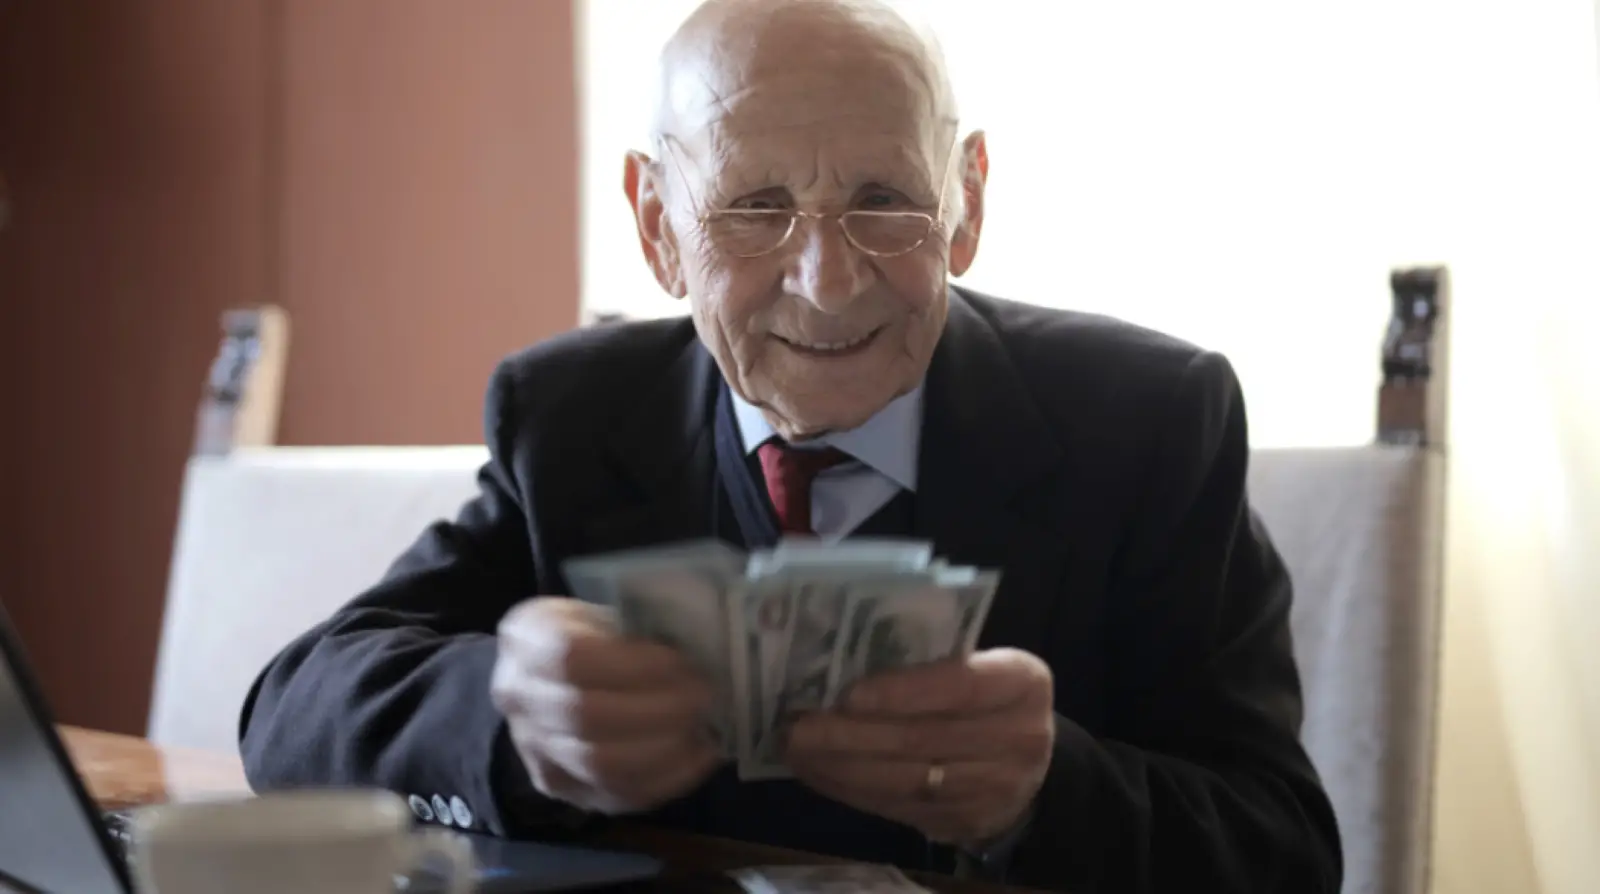 Senior man smiling counting cash at his laptop